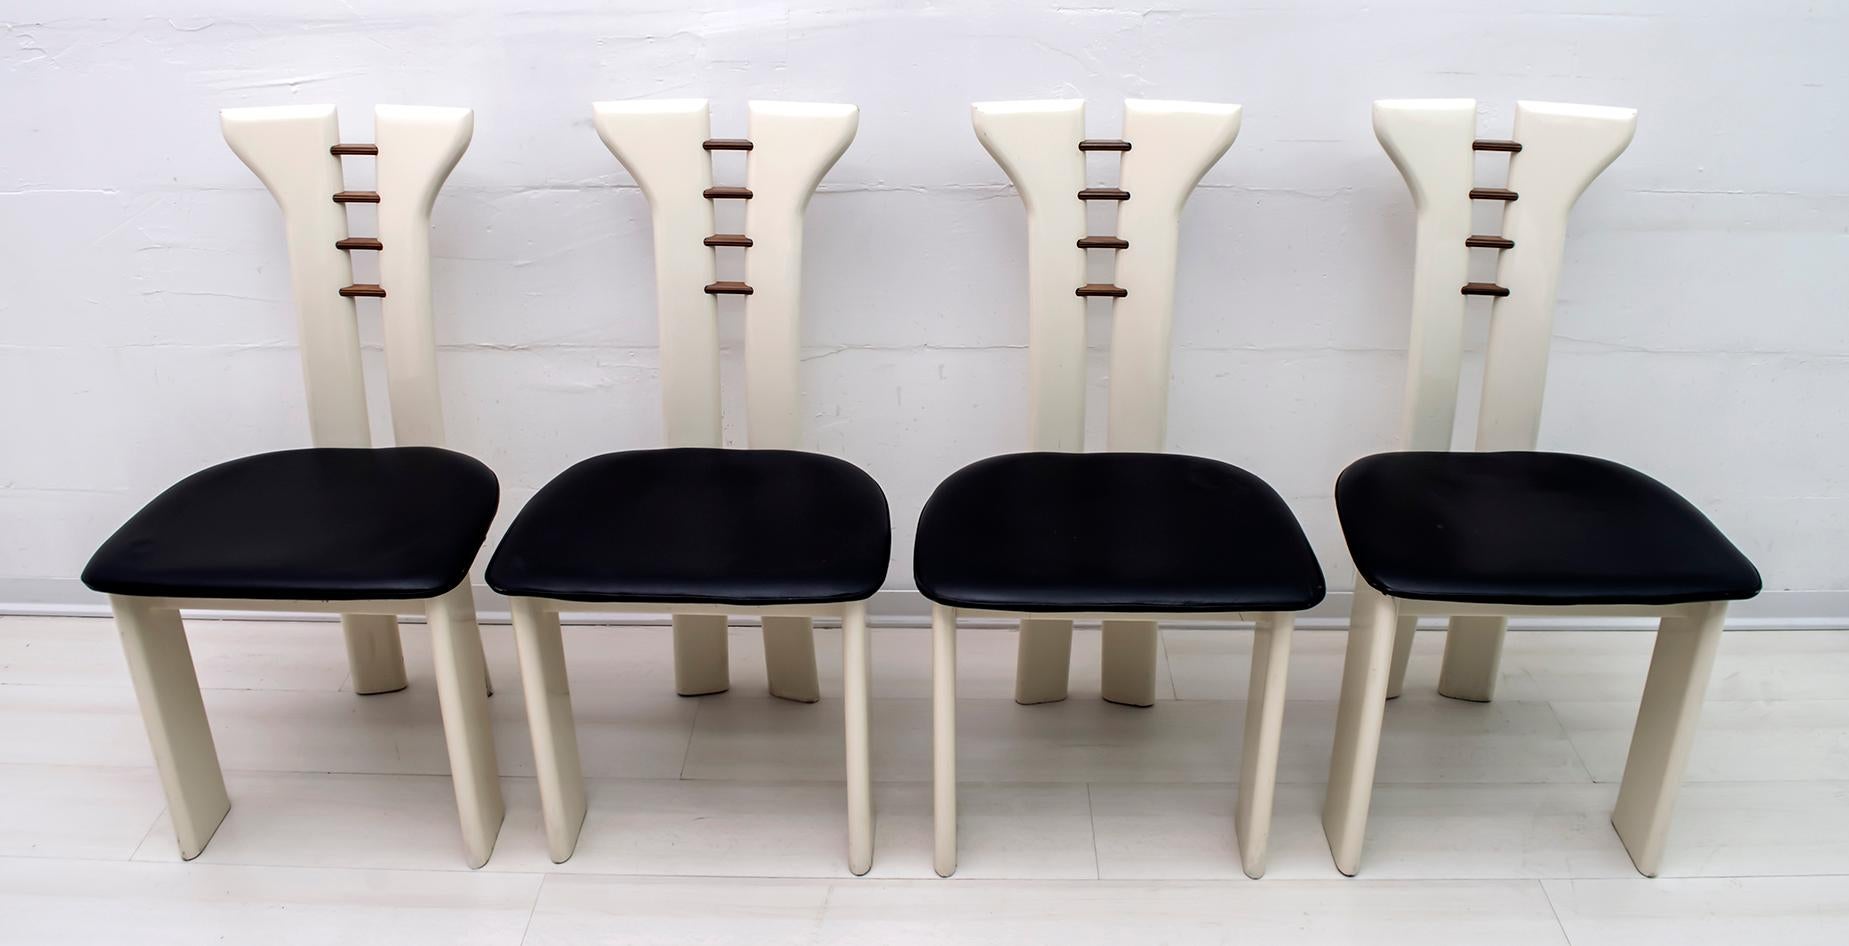 Schöner Satz von 4 Esszimmerstühlen von Pierre Cardin für Roche Bobois. Elfenbeinfarben lackierte Massivholzstühle mit schwarzen Ledersitzen. Hinreißende Holzdetails auf der Rückseite. Dunkles Holz:: wahrscheinlich Palisander oder Nussbaum::